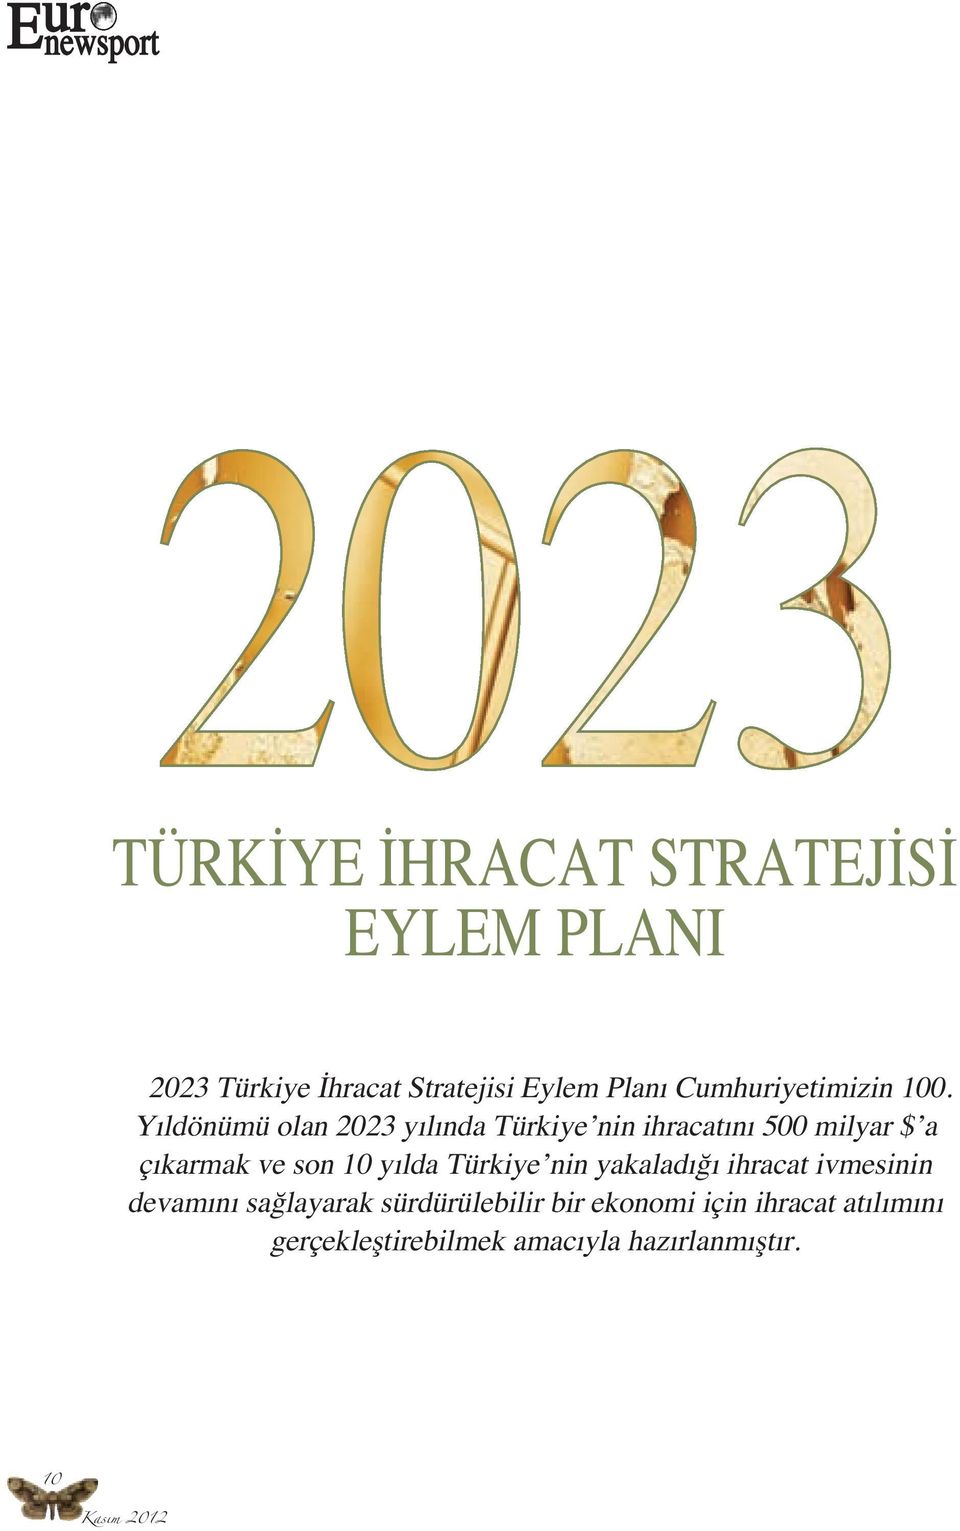 Yıldönümü olan 2023 yılında Türkiye nin ihracatını 500 milyar $ a çıkarmak ve son 10 yılda